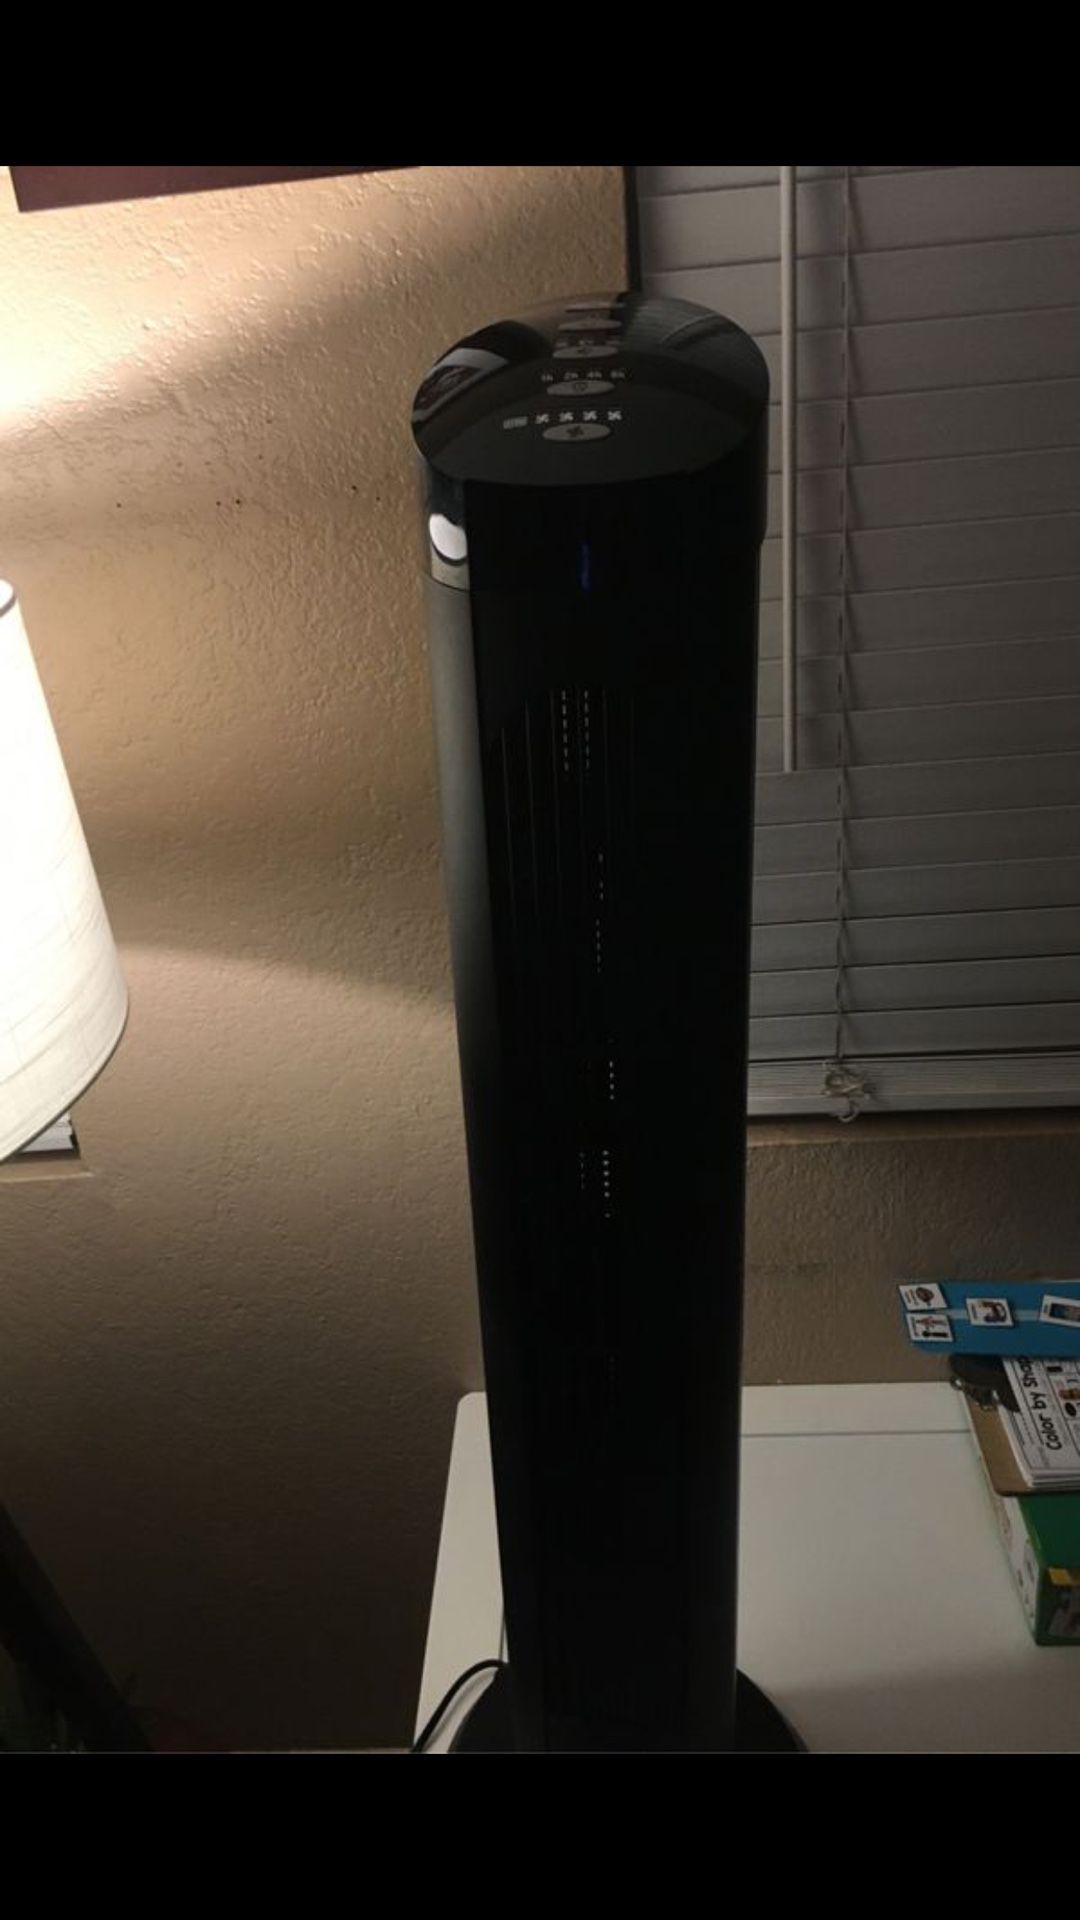 Ventilador - fan- tower fan